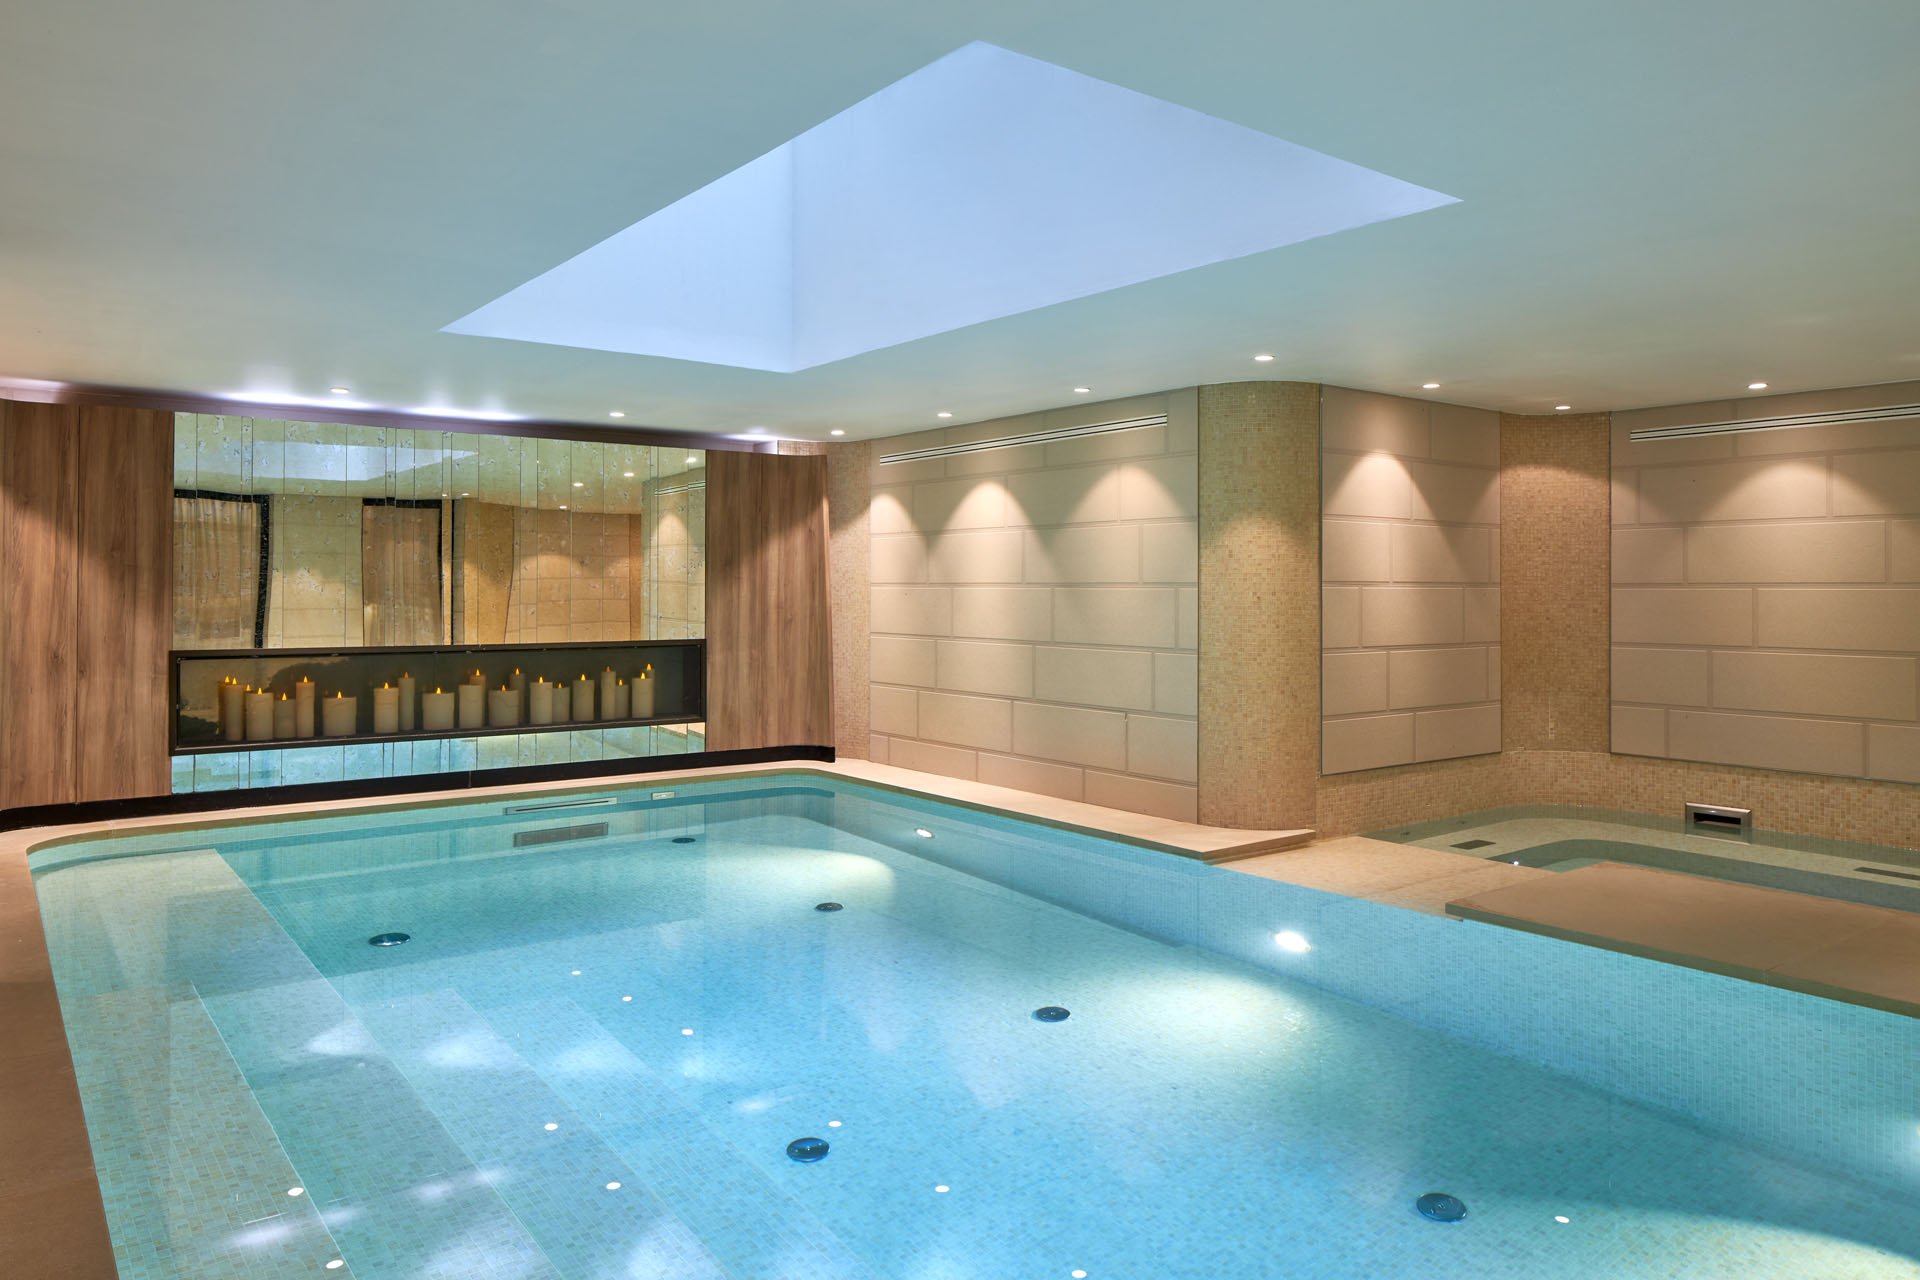 Maison Albar Hotels Le Pont-Neuf piscine intérieure Spa Pont-Neuf by Cinq Mondes